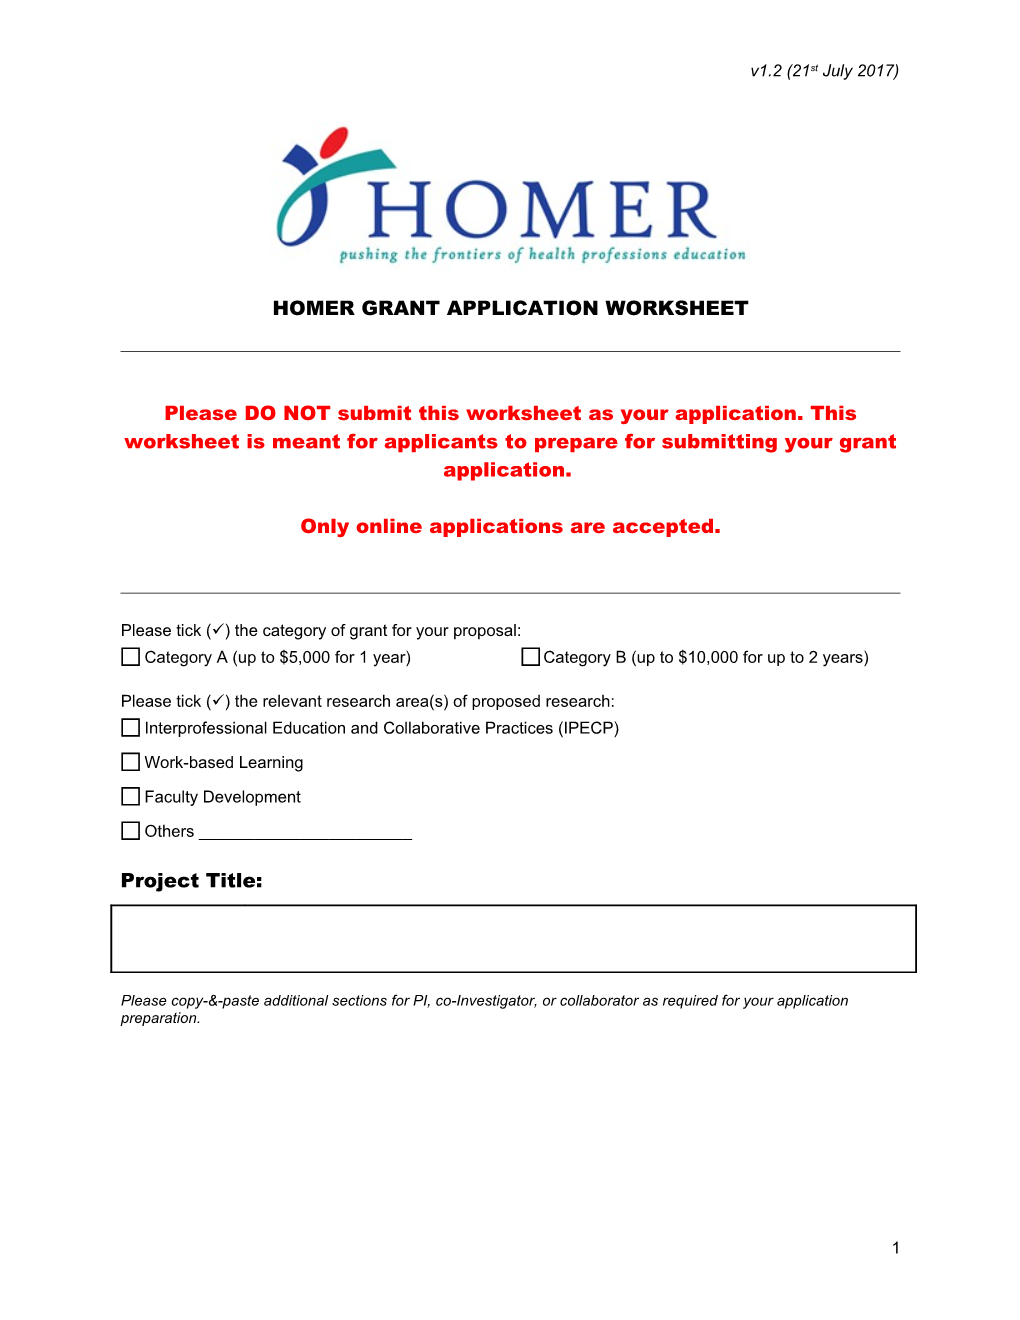 Homer Grant Application Worksheet